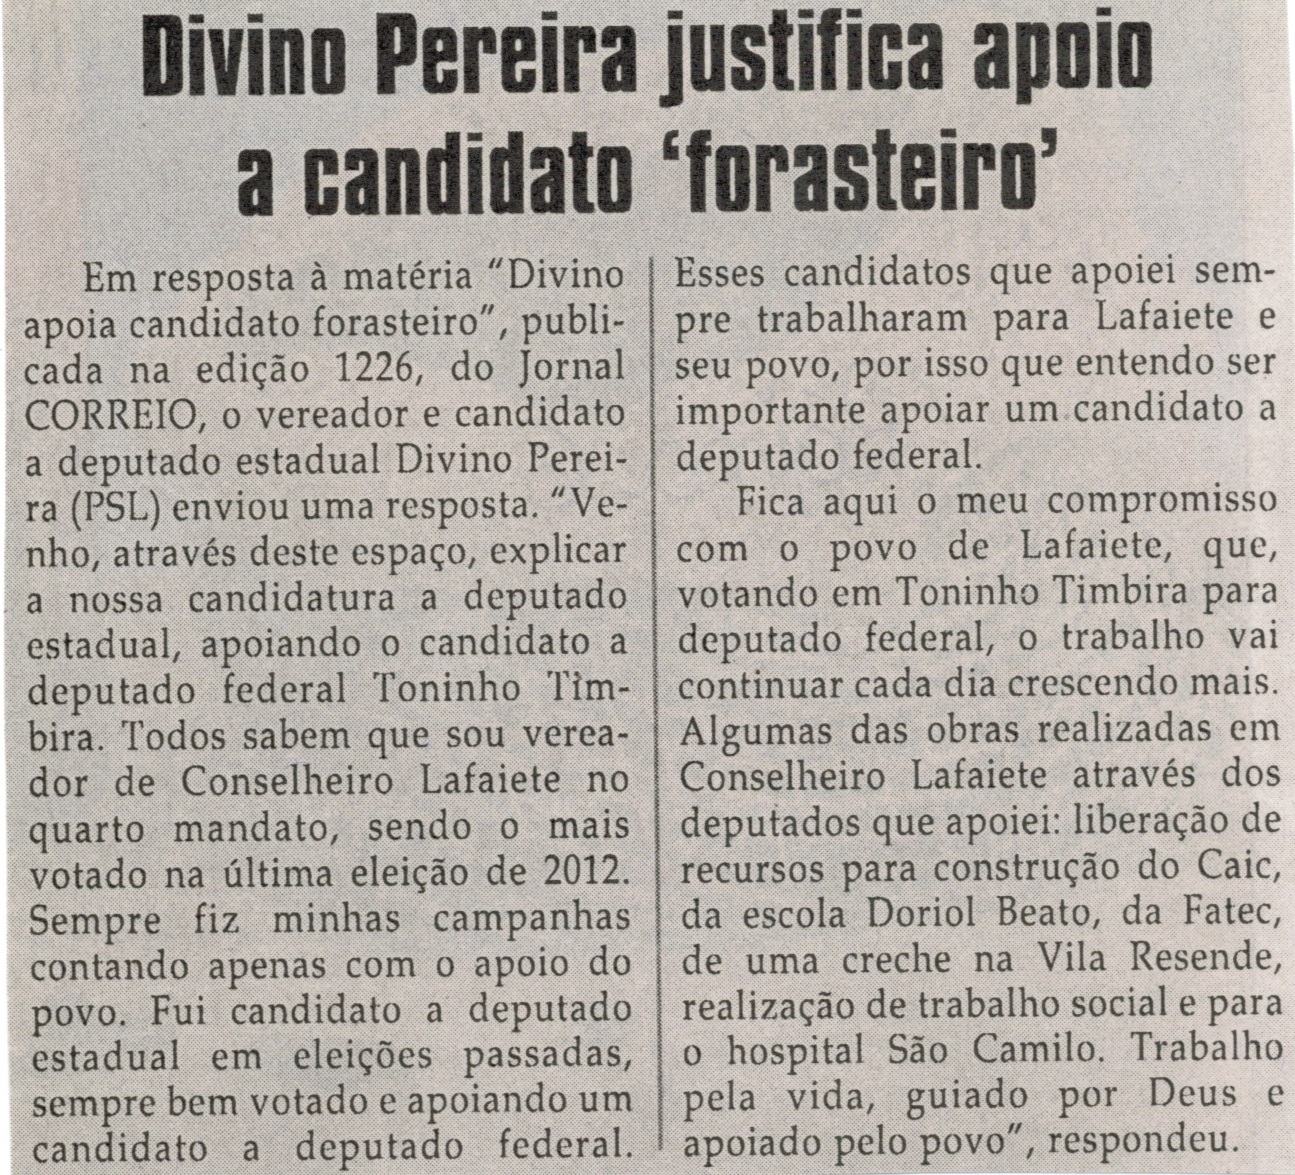 Divino Pereira justifica apoio a candidato forasteiro. Jornal Correio da Cidade, Conselheiro Lafaiete, 23 ago. 2014, p. 6.